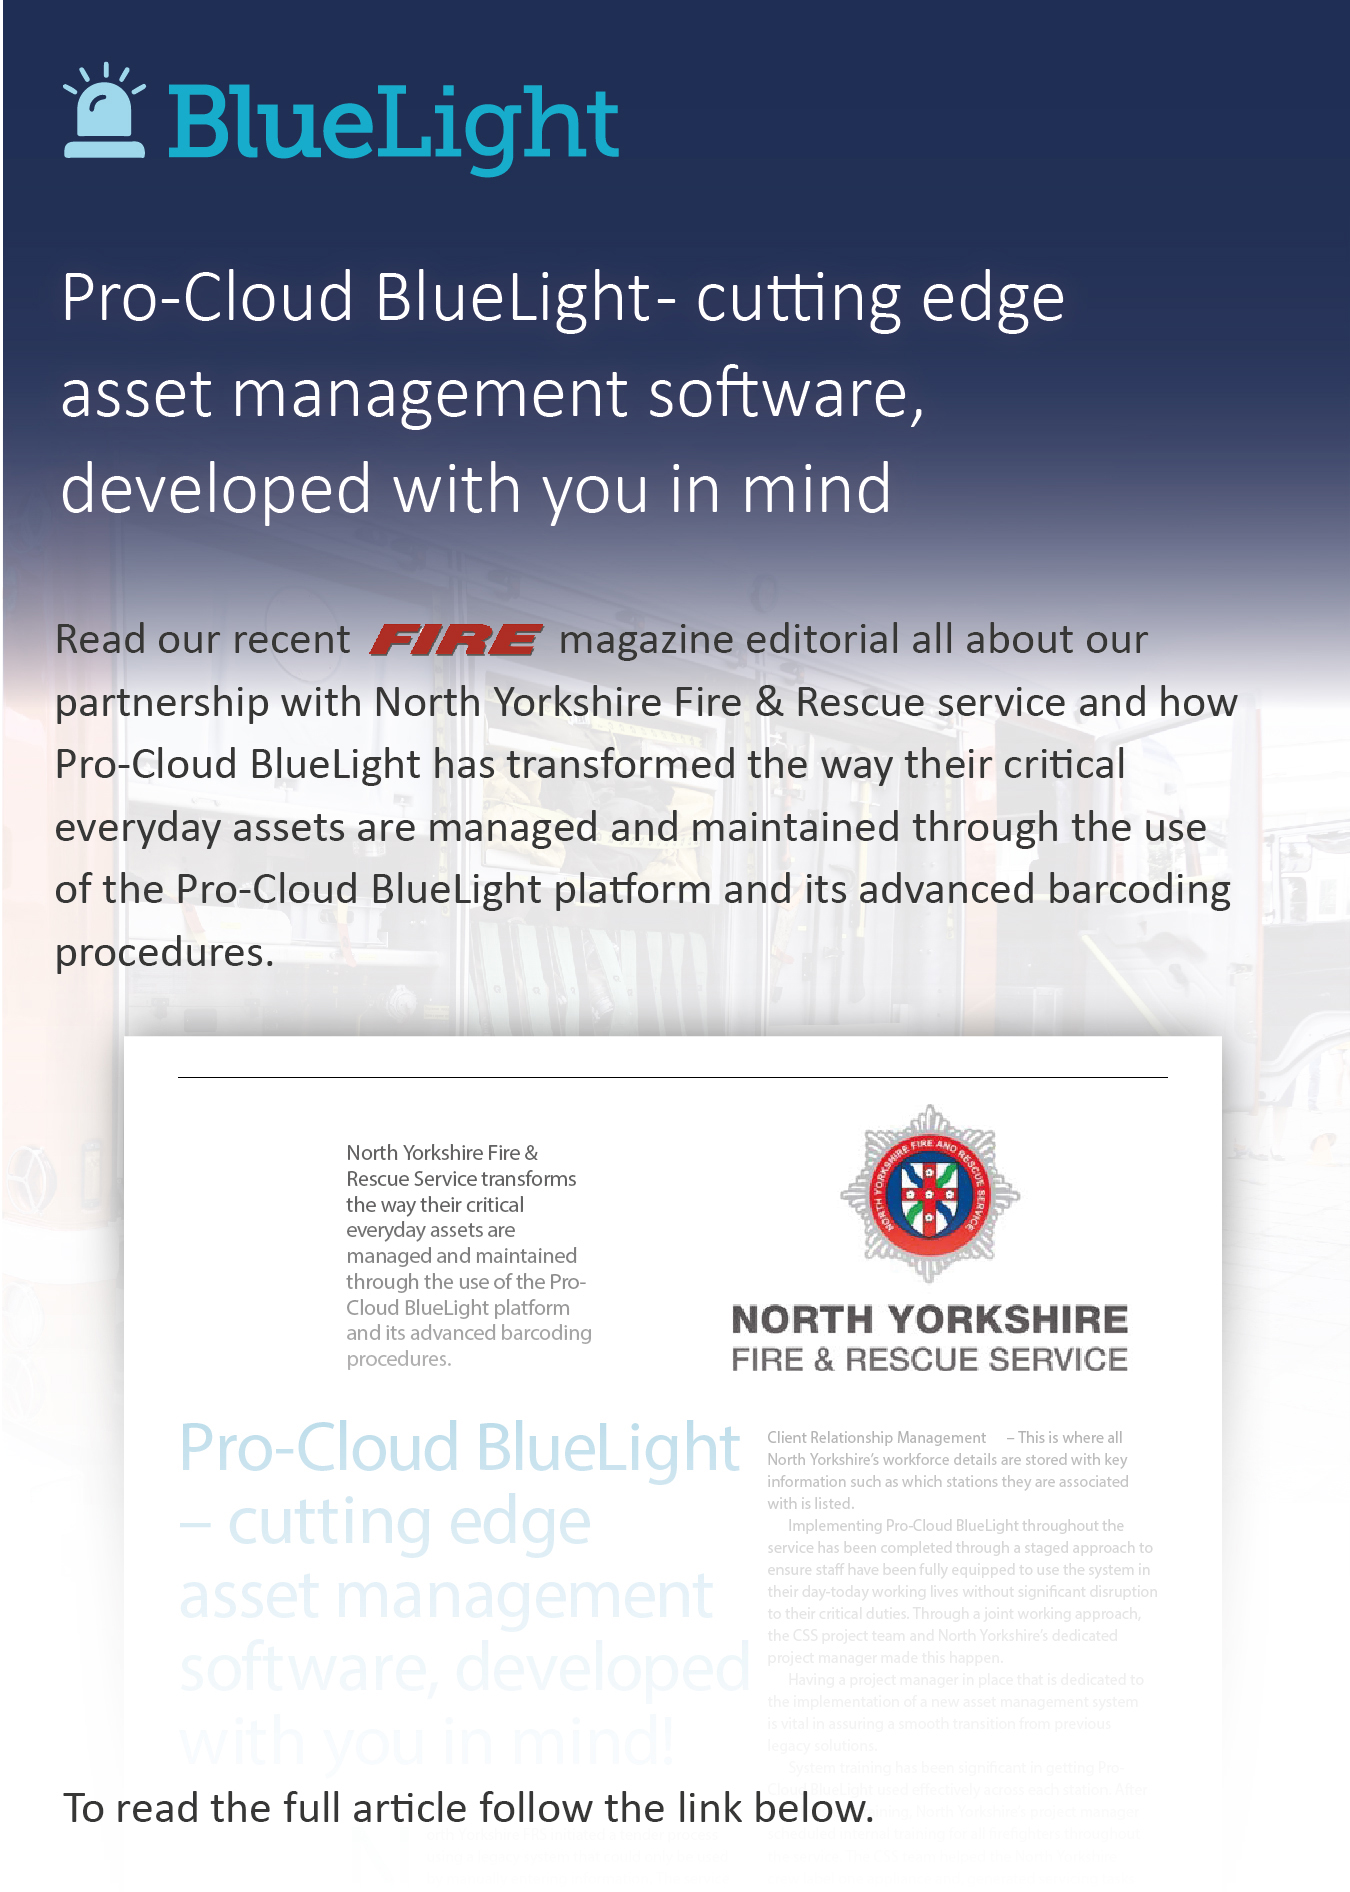 Lees ons recente redactionele artikel van het FIRE-magazine over onze samenwerking met de Fire & Rescue-service van North Yorkshire en hoe Pro-Cloud BlueLight de manier heeft veranderd waarop hun kritieke dagelijkse activa worden beheerd en onderhouden door het gebruik van het Pro-Cloud BlueLight-platform en de geavanceerde barcodeprocedures ervan .